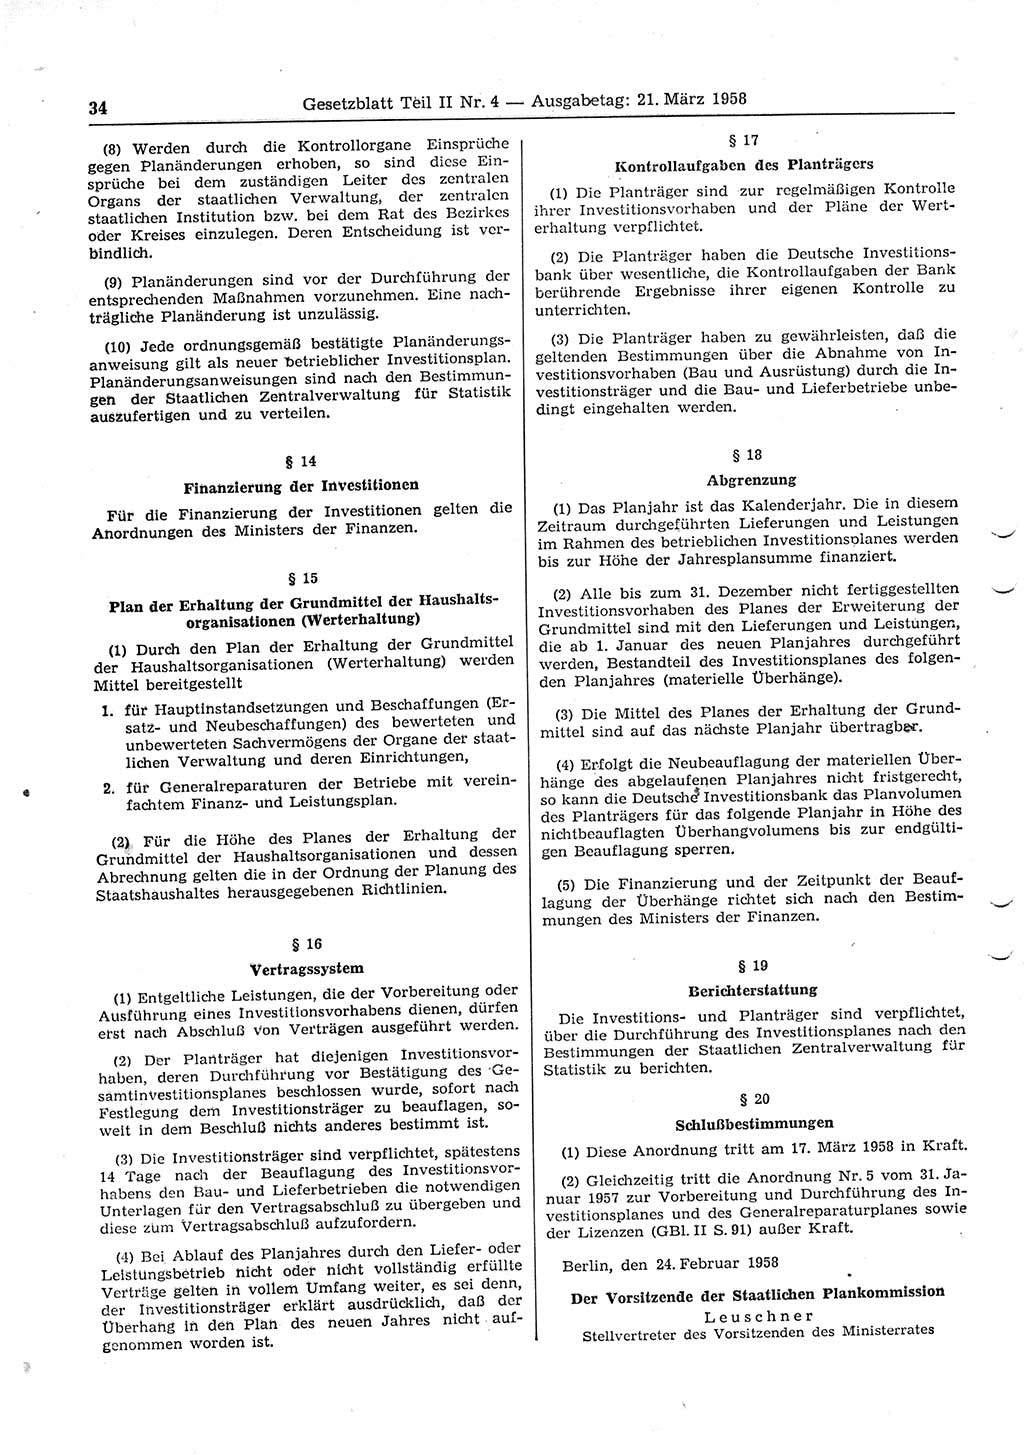 Gesetzblatt (GBl.) der Deutschen Demokratischen Republik (DDR) Teil ⅠⅠ 1958, Seite 34 (GBl. DDR ⅠⅠ 1958, S. 34)